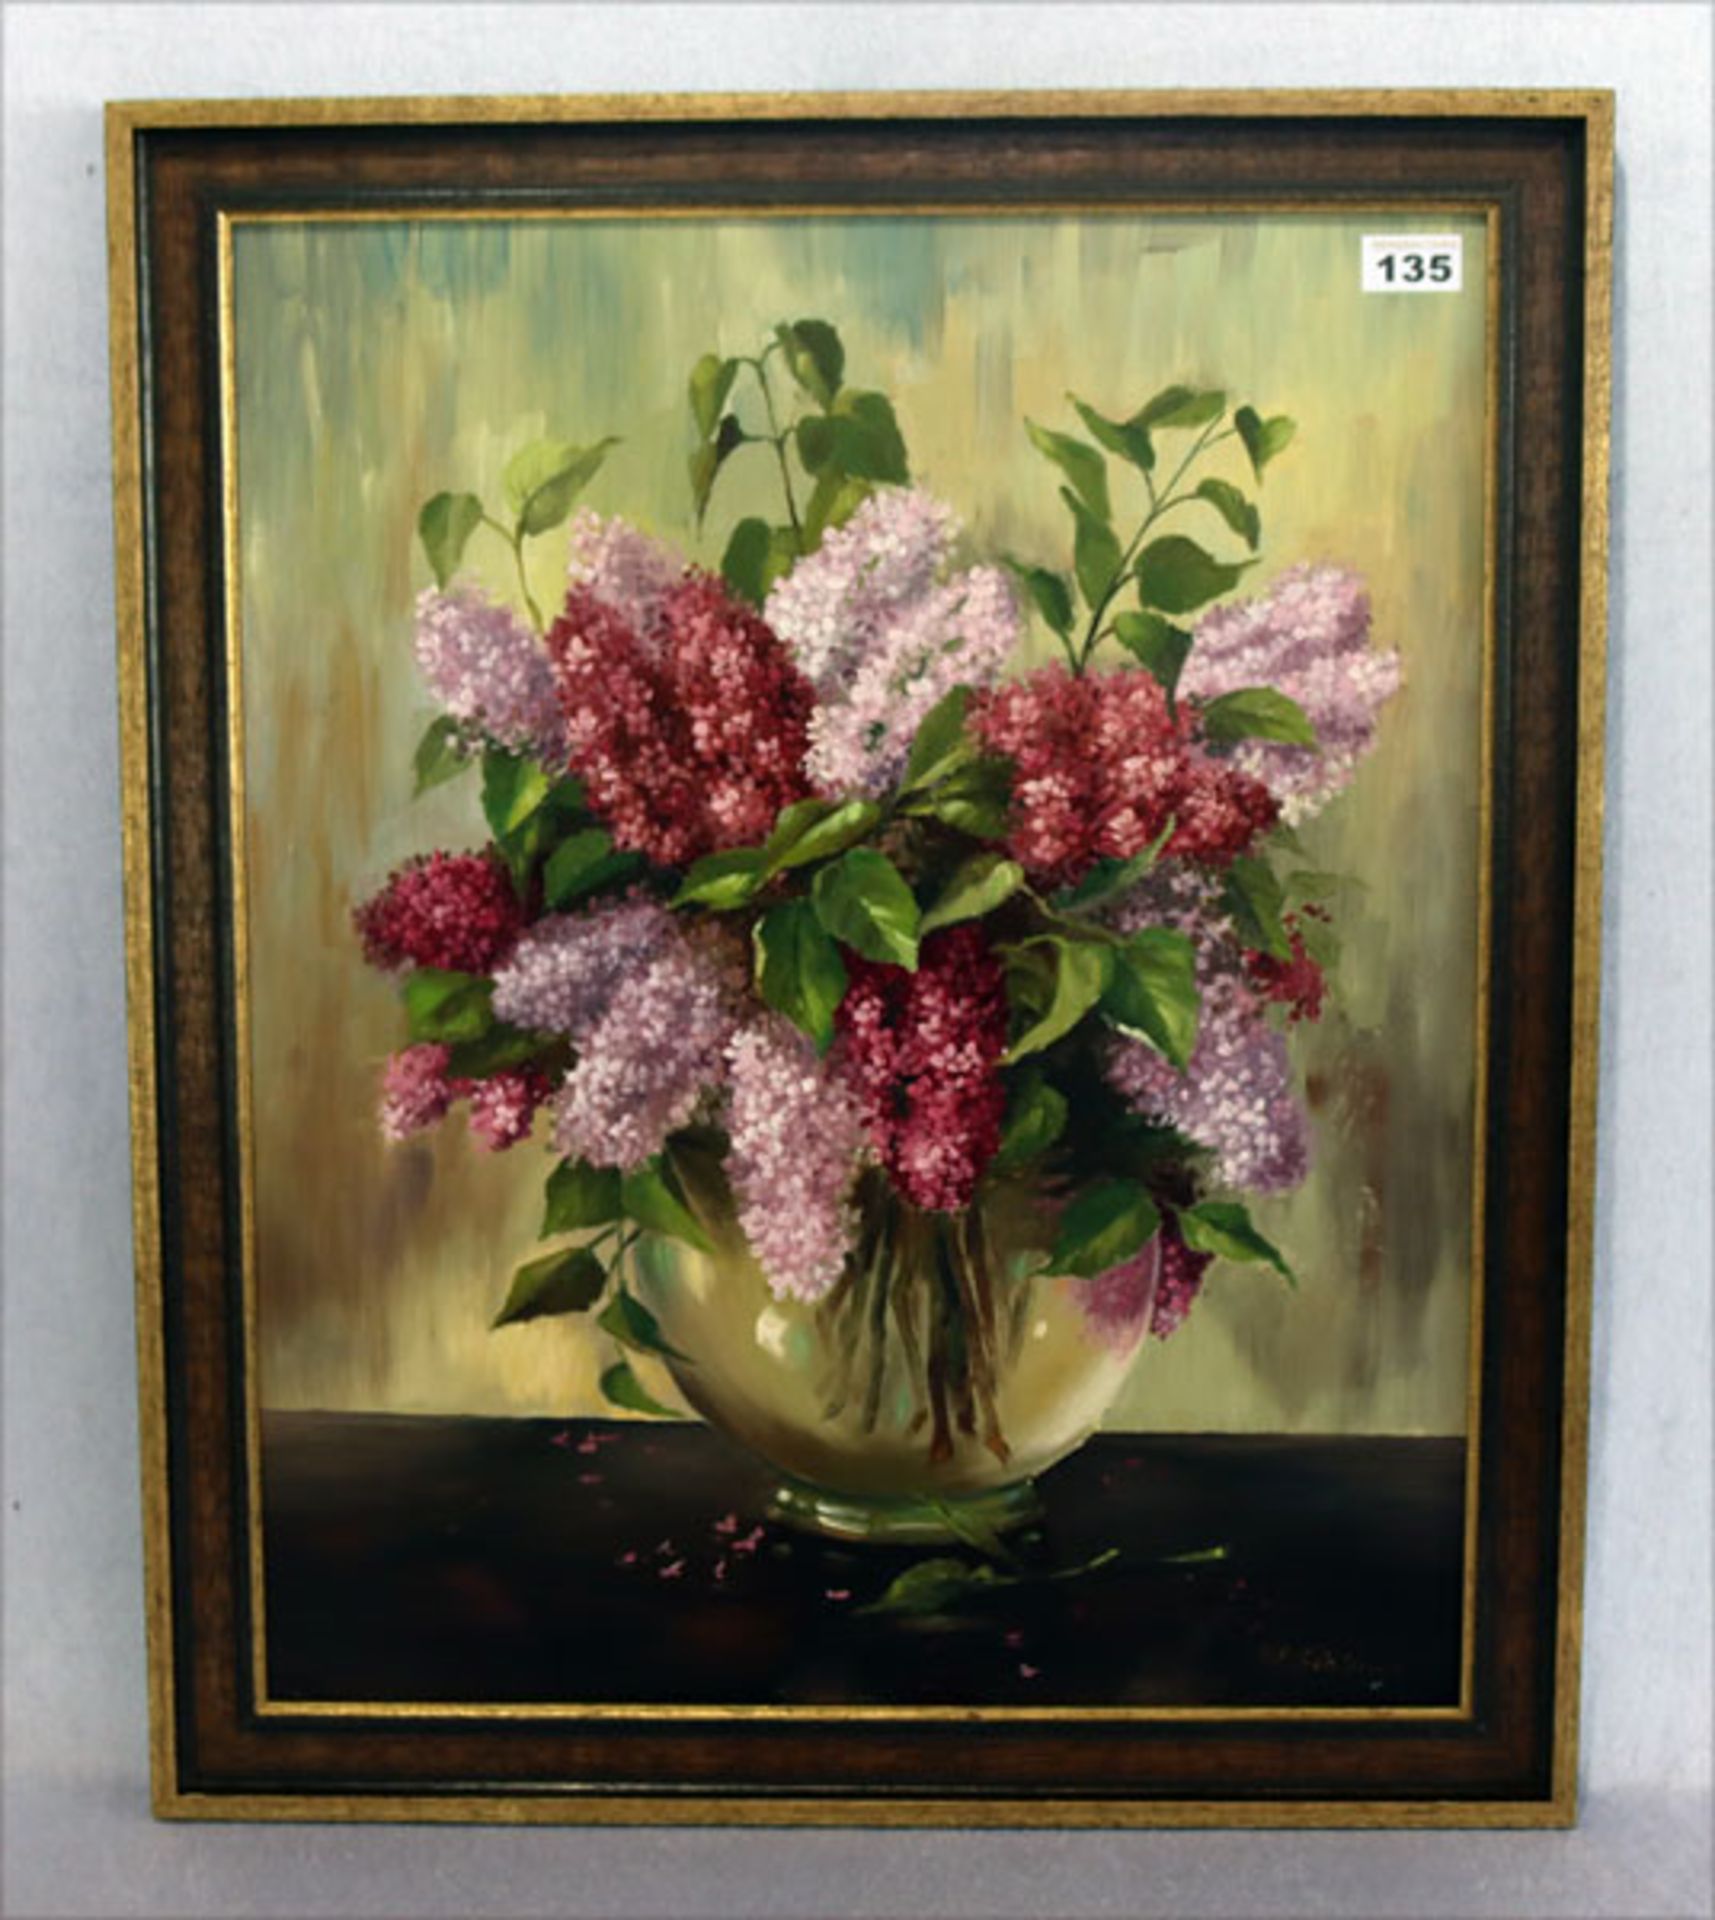 Gemälde ÖL/Malkarton 'Flieder in Vase', signiert W. Schiener, gerahmt, incl. Rahmen 68 cm x 57 cm